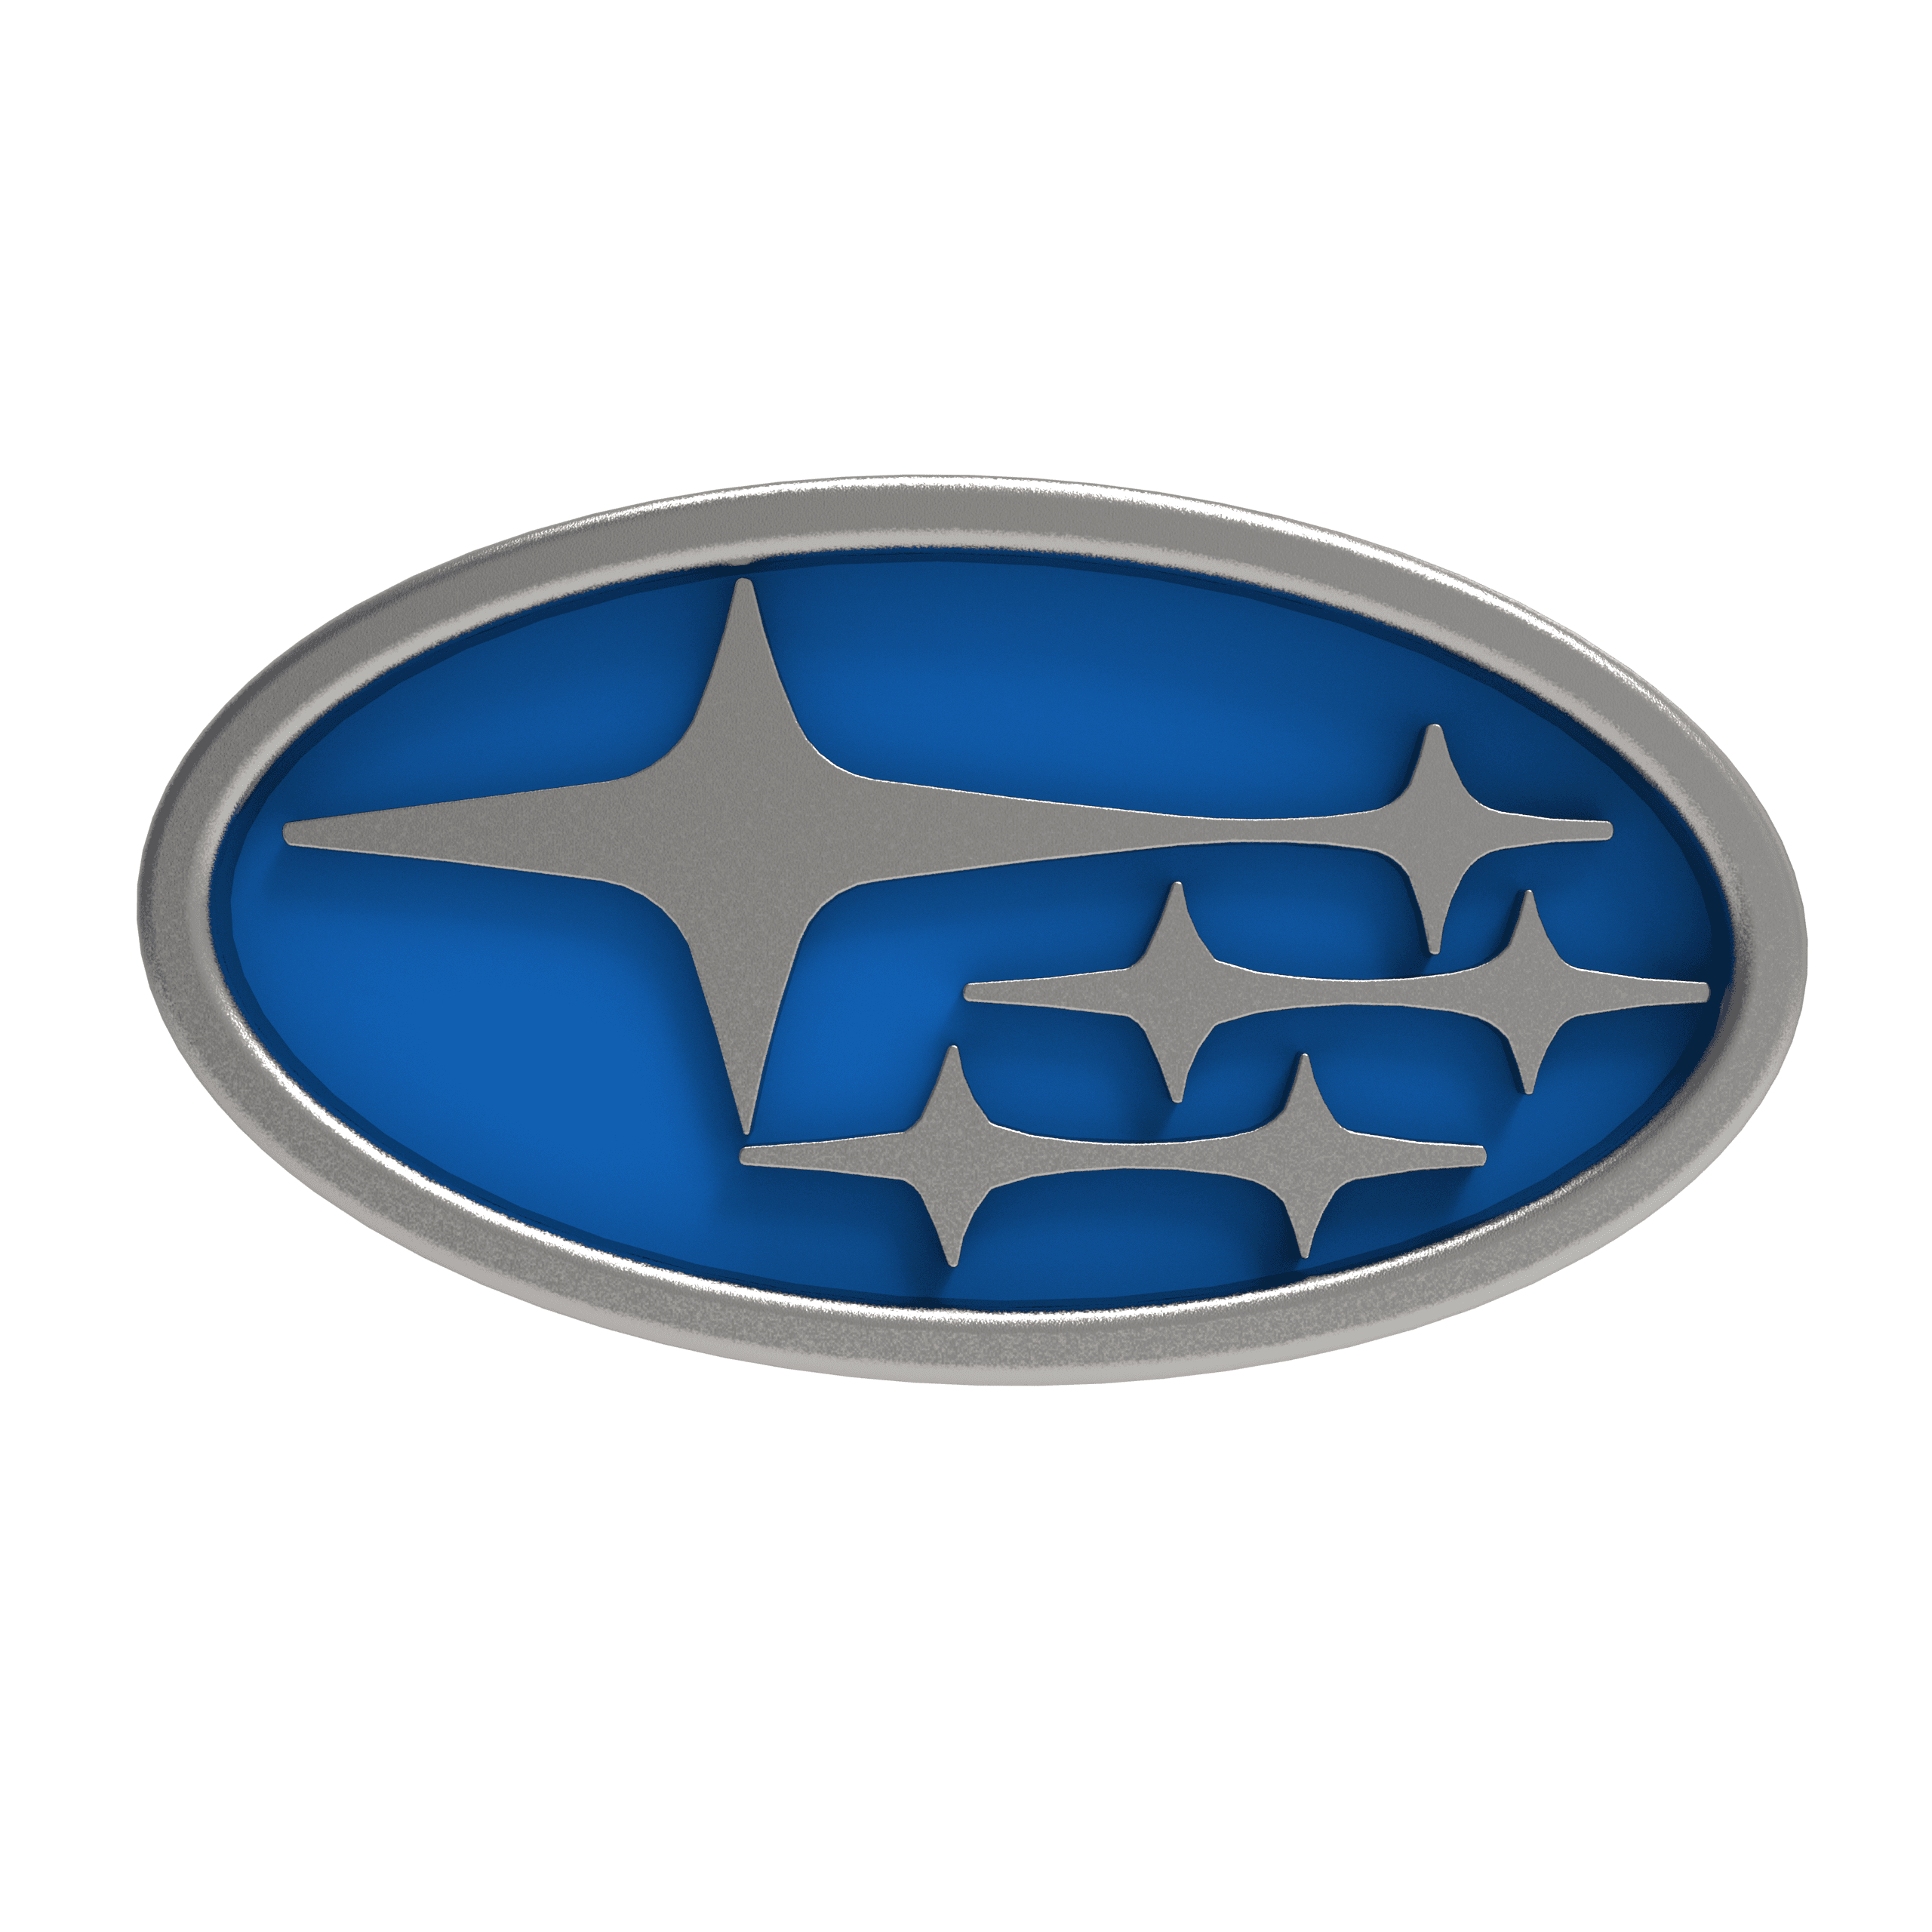 Subaru logo 3d model